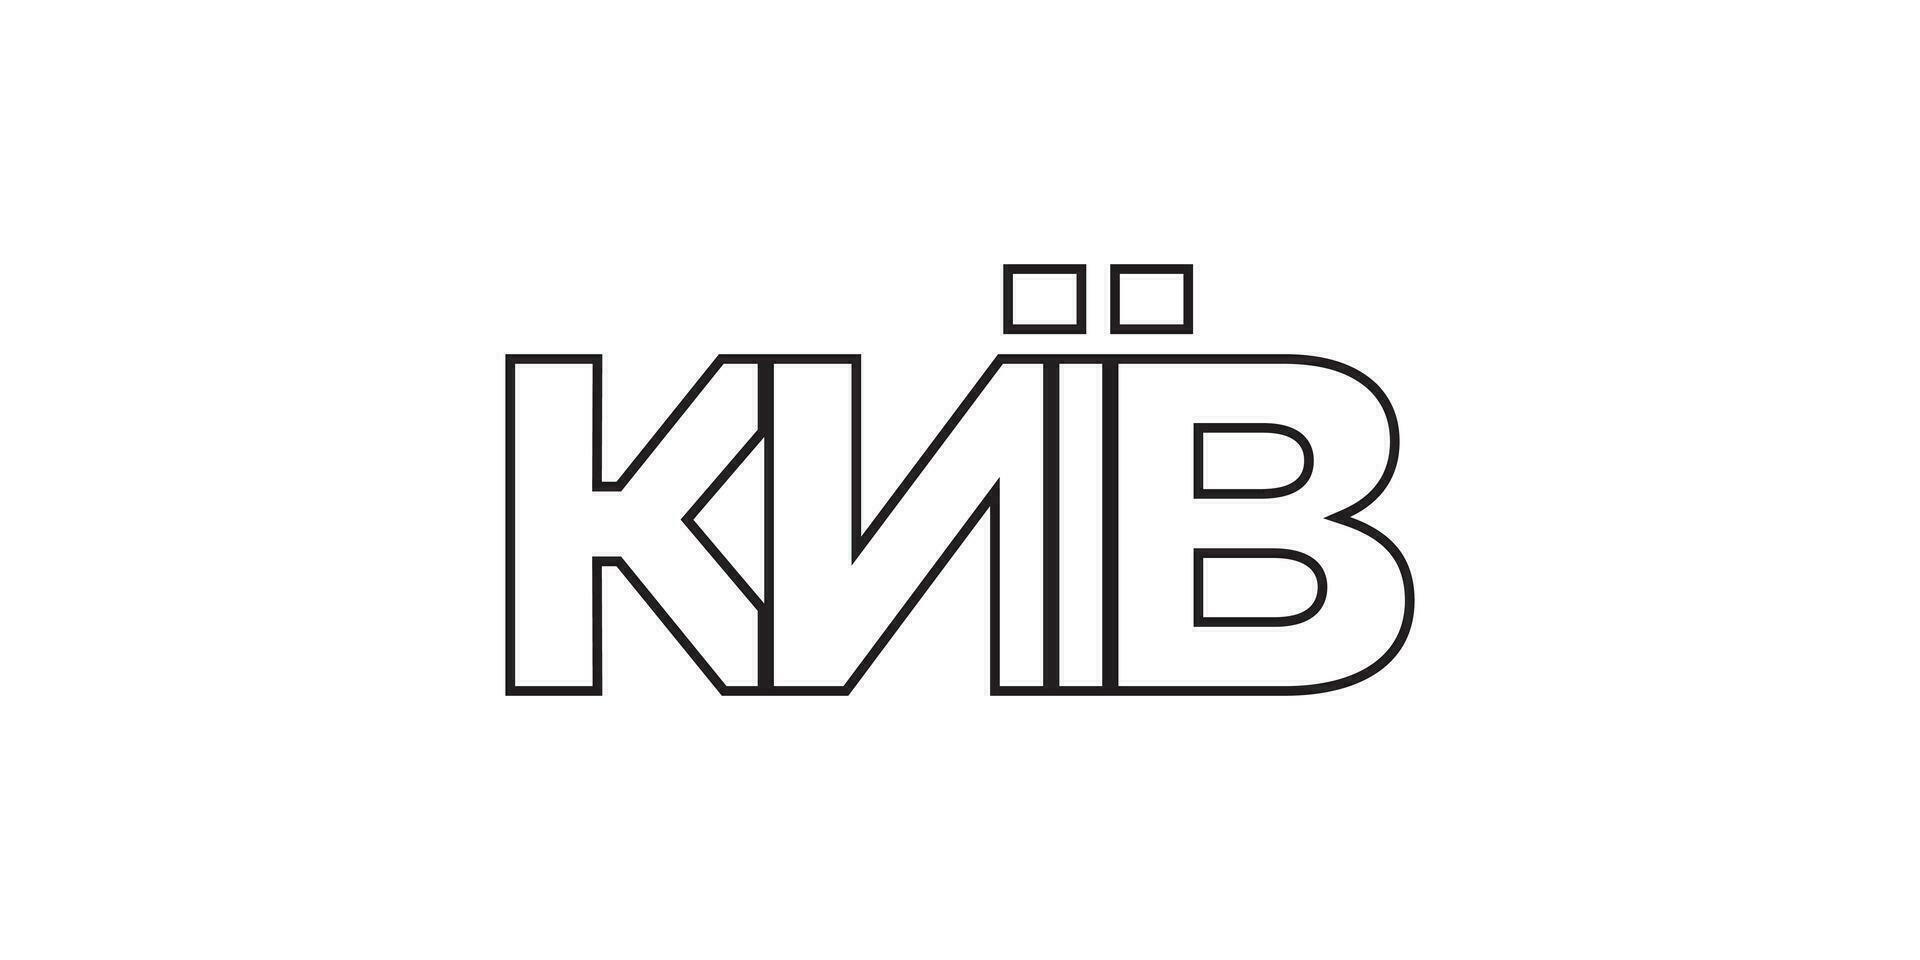 kyiv in de Oekraïne embleem. de ontwerp Kenmerken een meetkundig stijl, vector illustratie met stoutmoedig typografie in een modern lettertype. de grafisch leuze belettering.